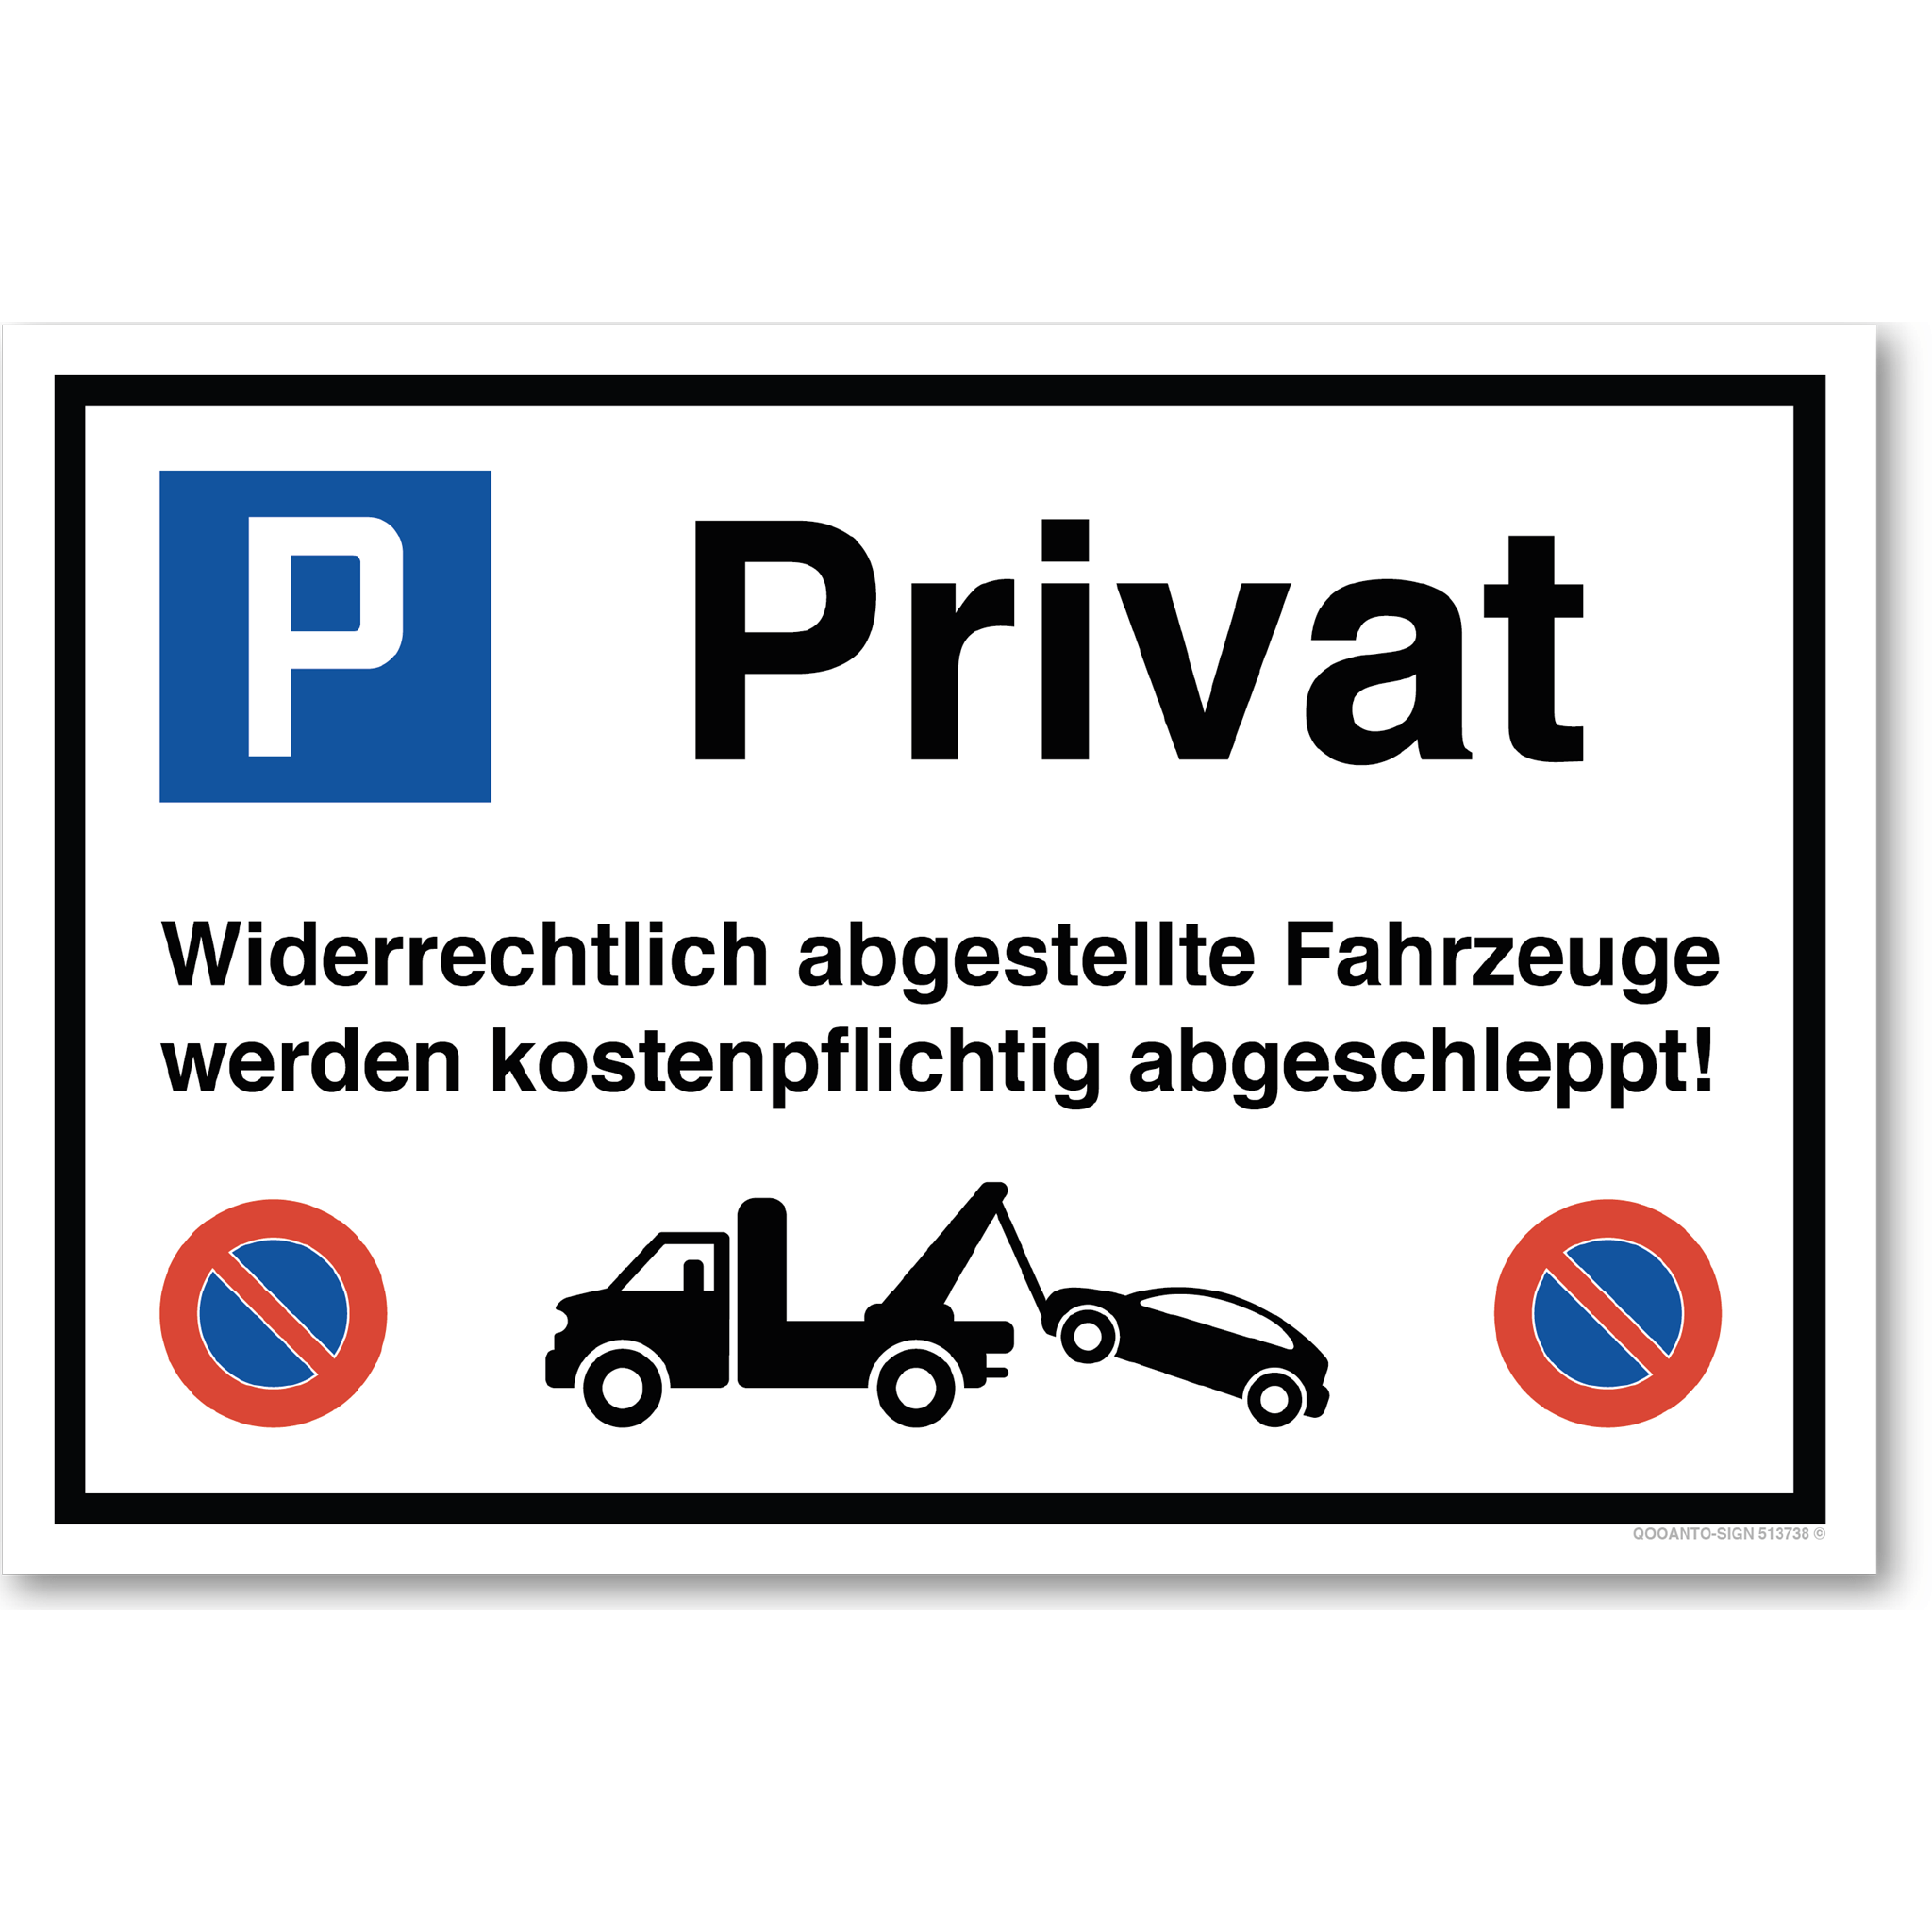 Privat - Widerrechtlich abgestellte Fahrzeuge werden kostenpflichtig abgeschleppt - Parkplatzschild querformat